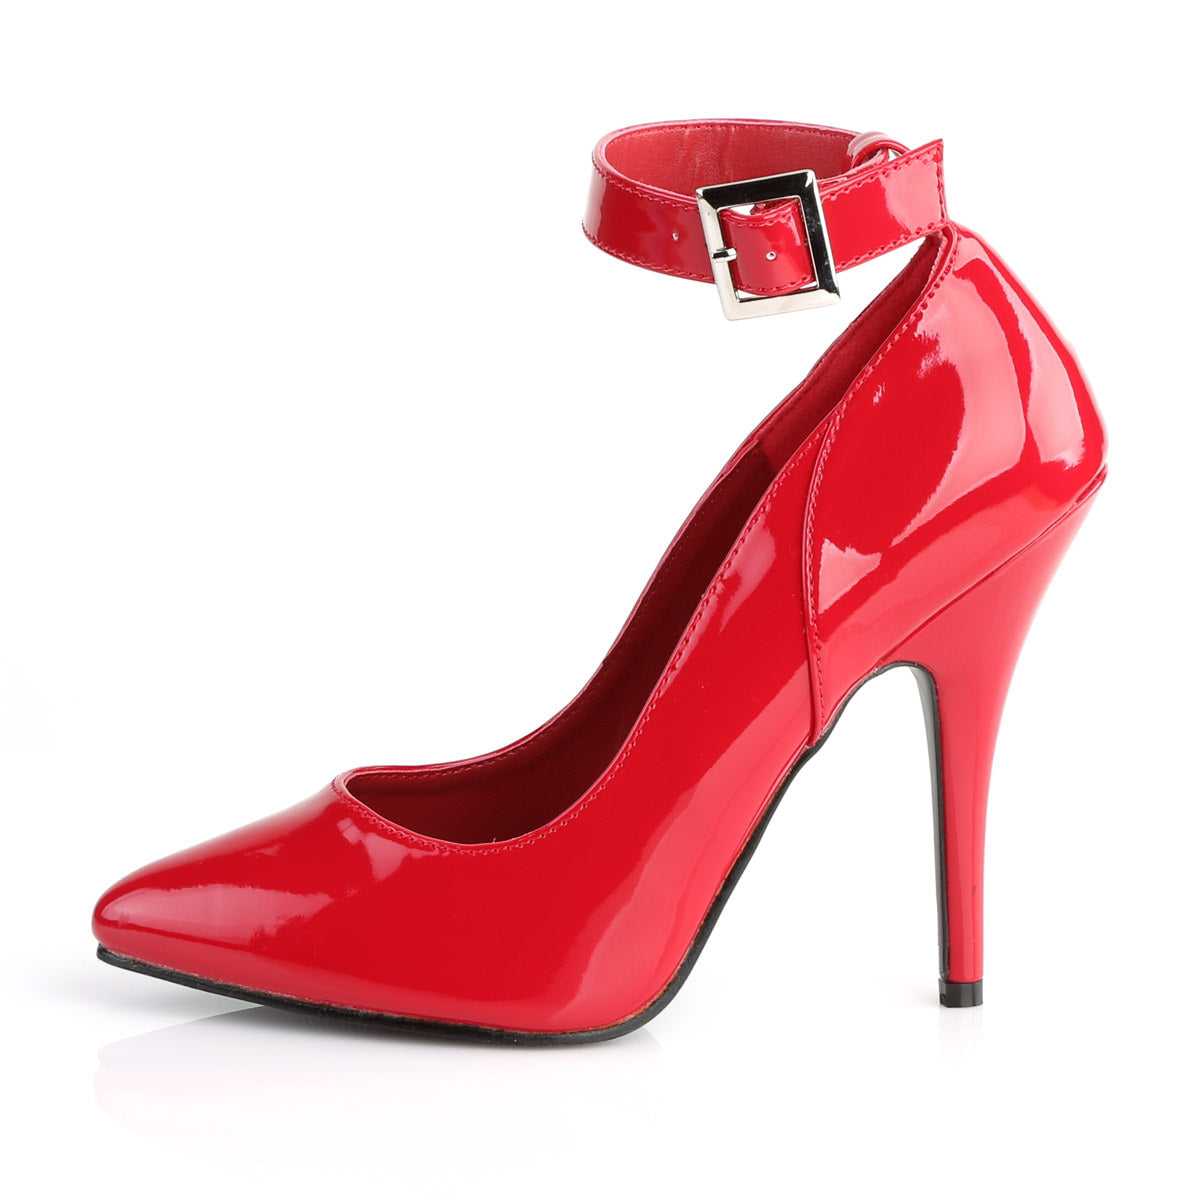 5 Inch Heel SEDUCE-431 Red Pat Plus Size Ankle Strap Pump – Shoecup.com